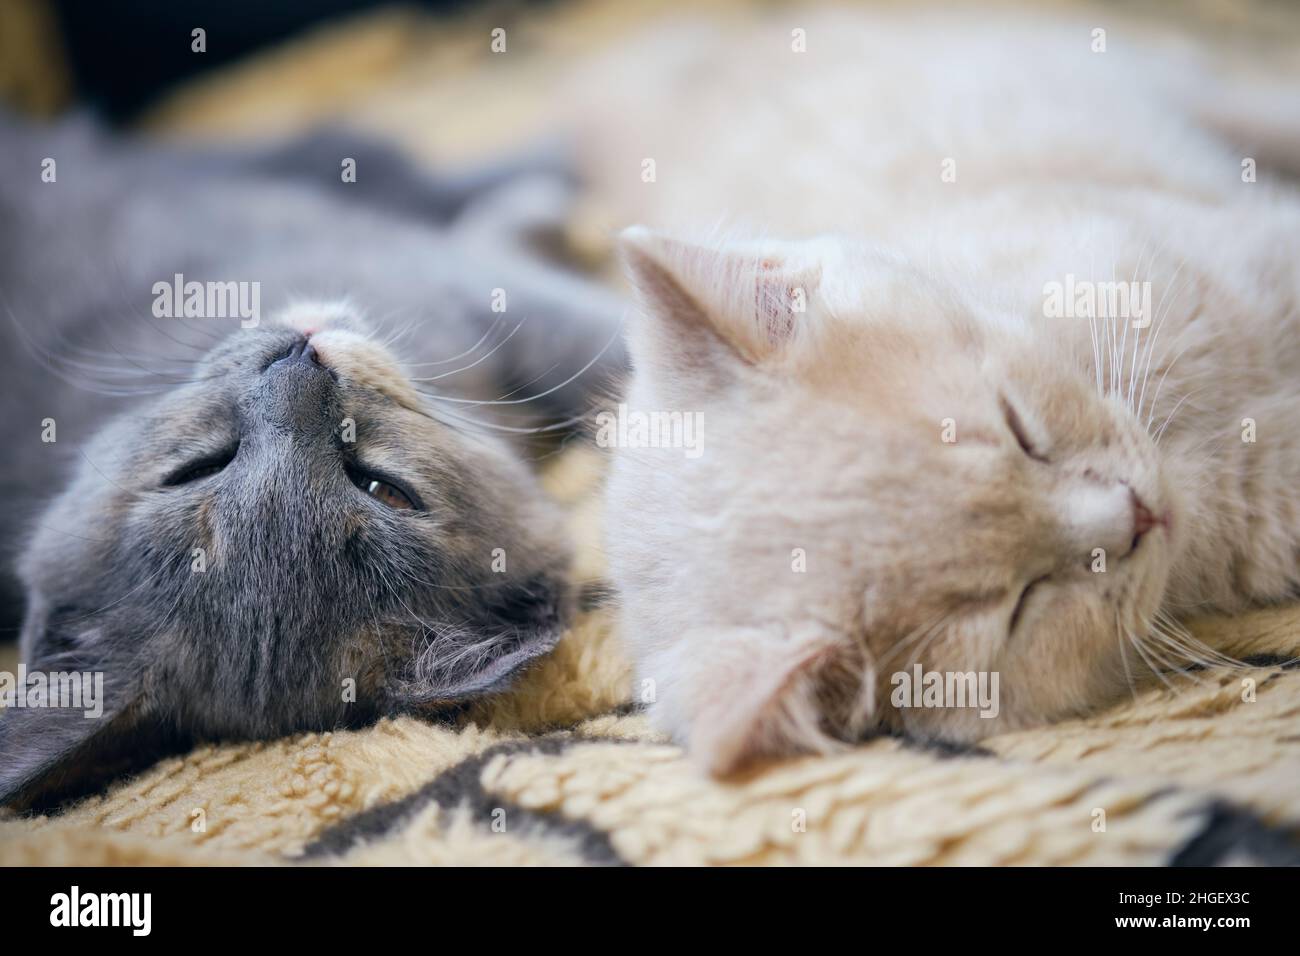 Gros plan de deux chatons fatigués qui se nouent ensemble Banque D'Images